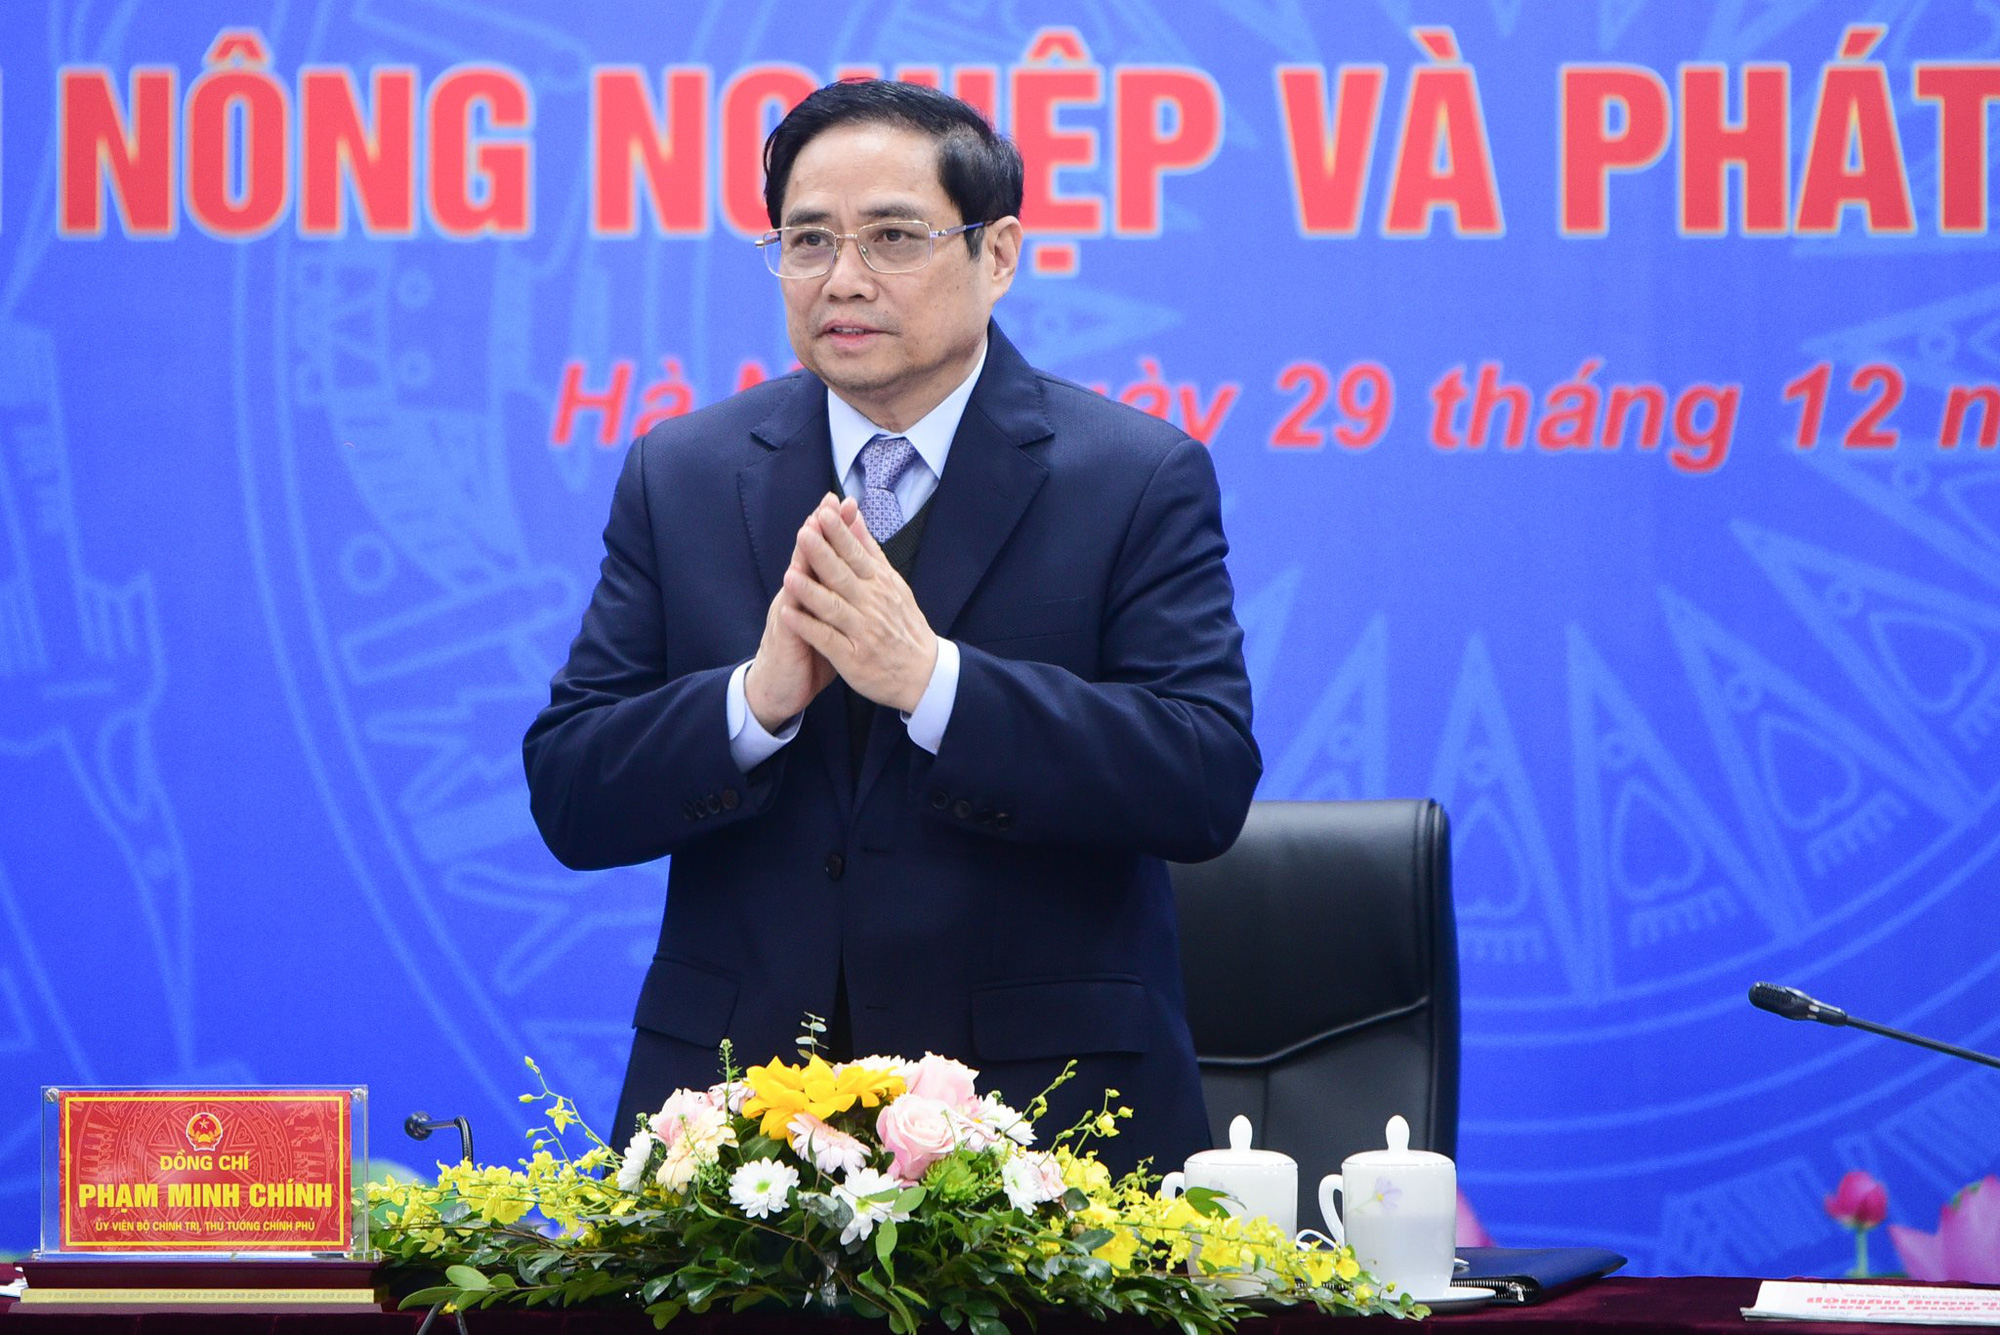 Thủ tướng Phạm Minh Chính dự Hội nghị tổng kết ngành nông nghiệp năm 2021, năm của những kỷ lục mới - Ảnh 1.